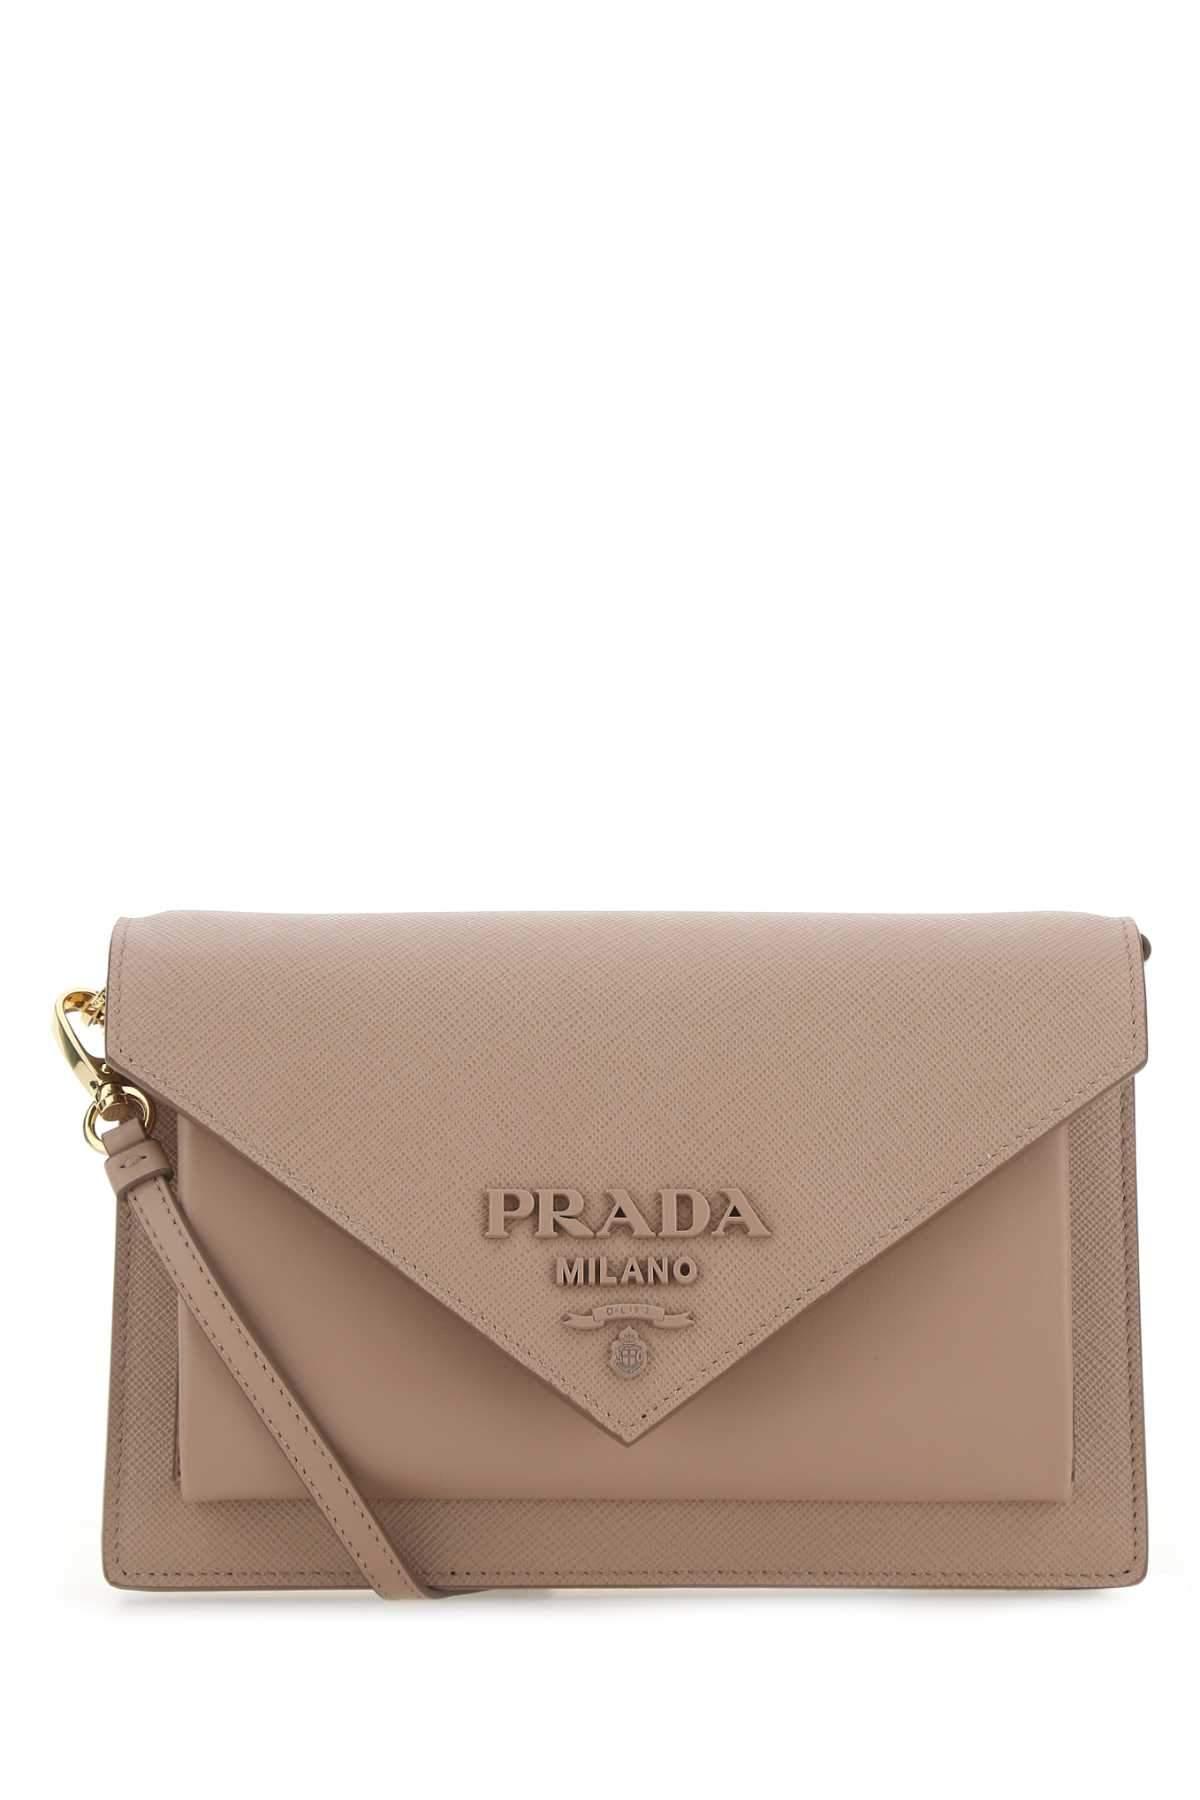 Prada Logo Envelope Crossbody Bag in Natural | Lyst